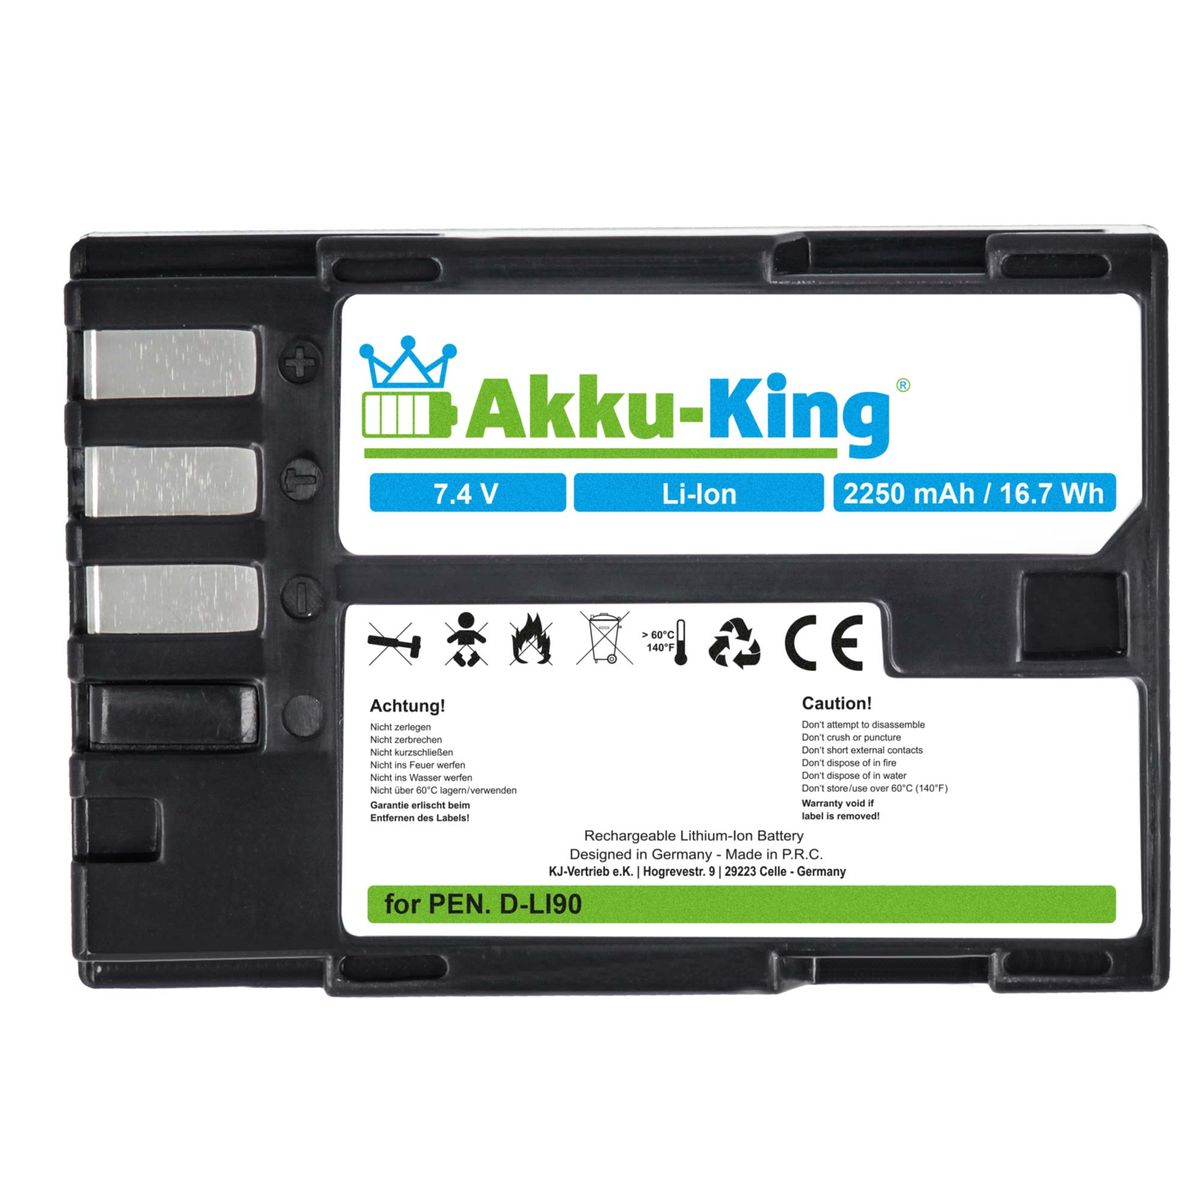 AKKU-KING Akku kompatibel mit Volt, Kamera-Akku, 7.4 2250mAh D-Li90 Pentax Li-Ion